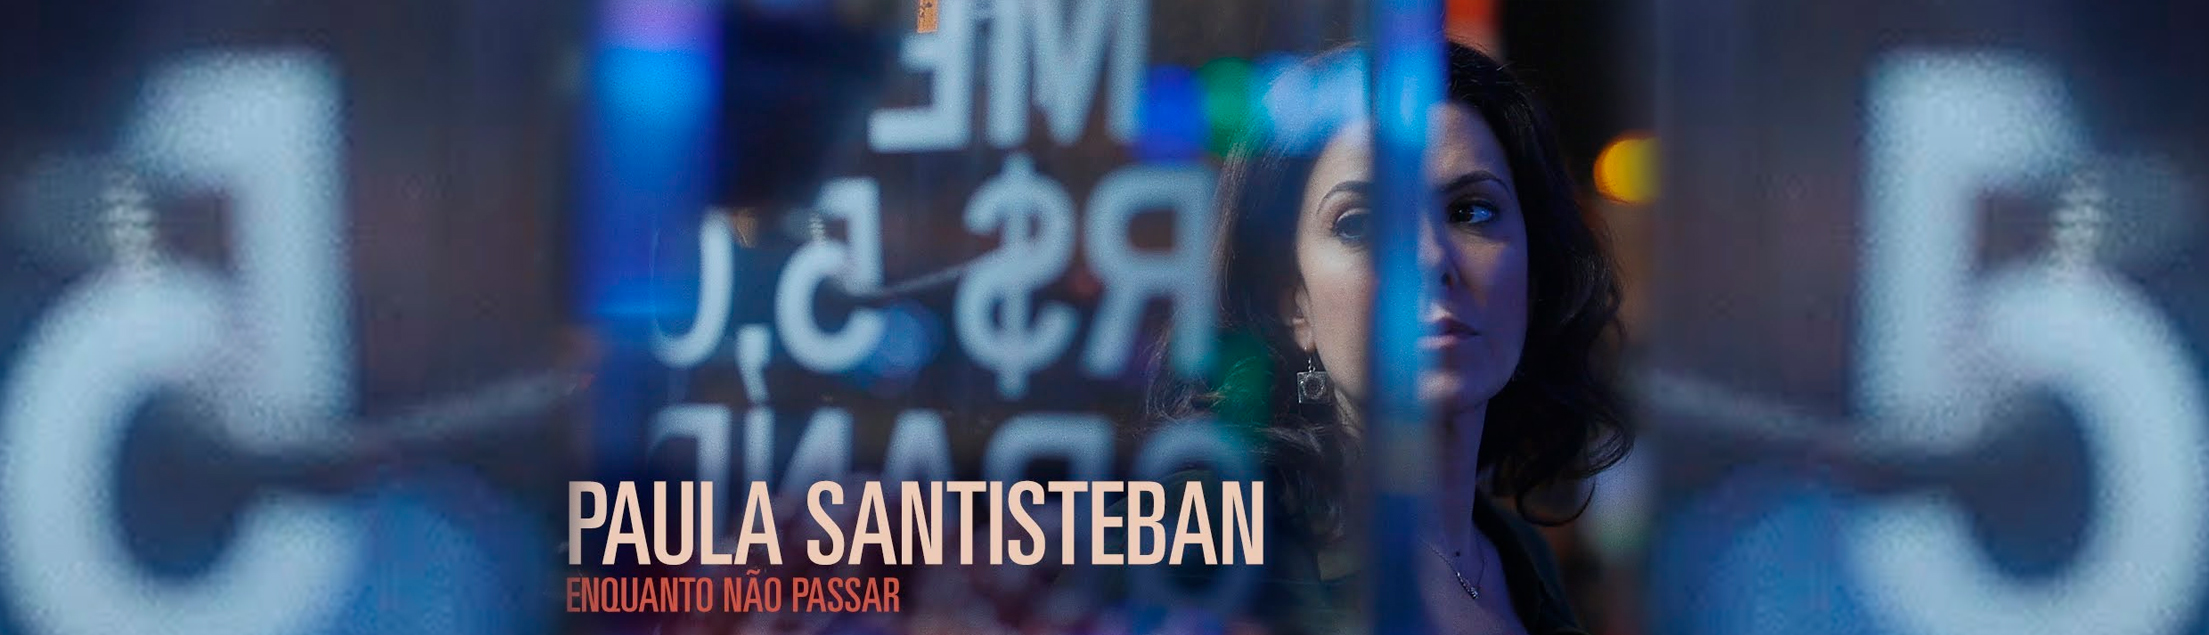 Paula Santisteban lança primeiro clipe, “Enquanto Não Passar”